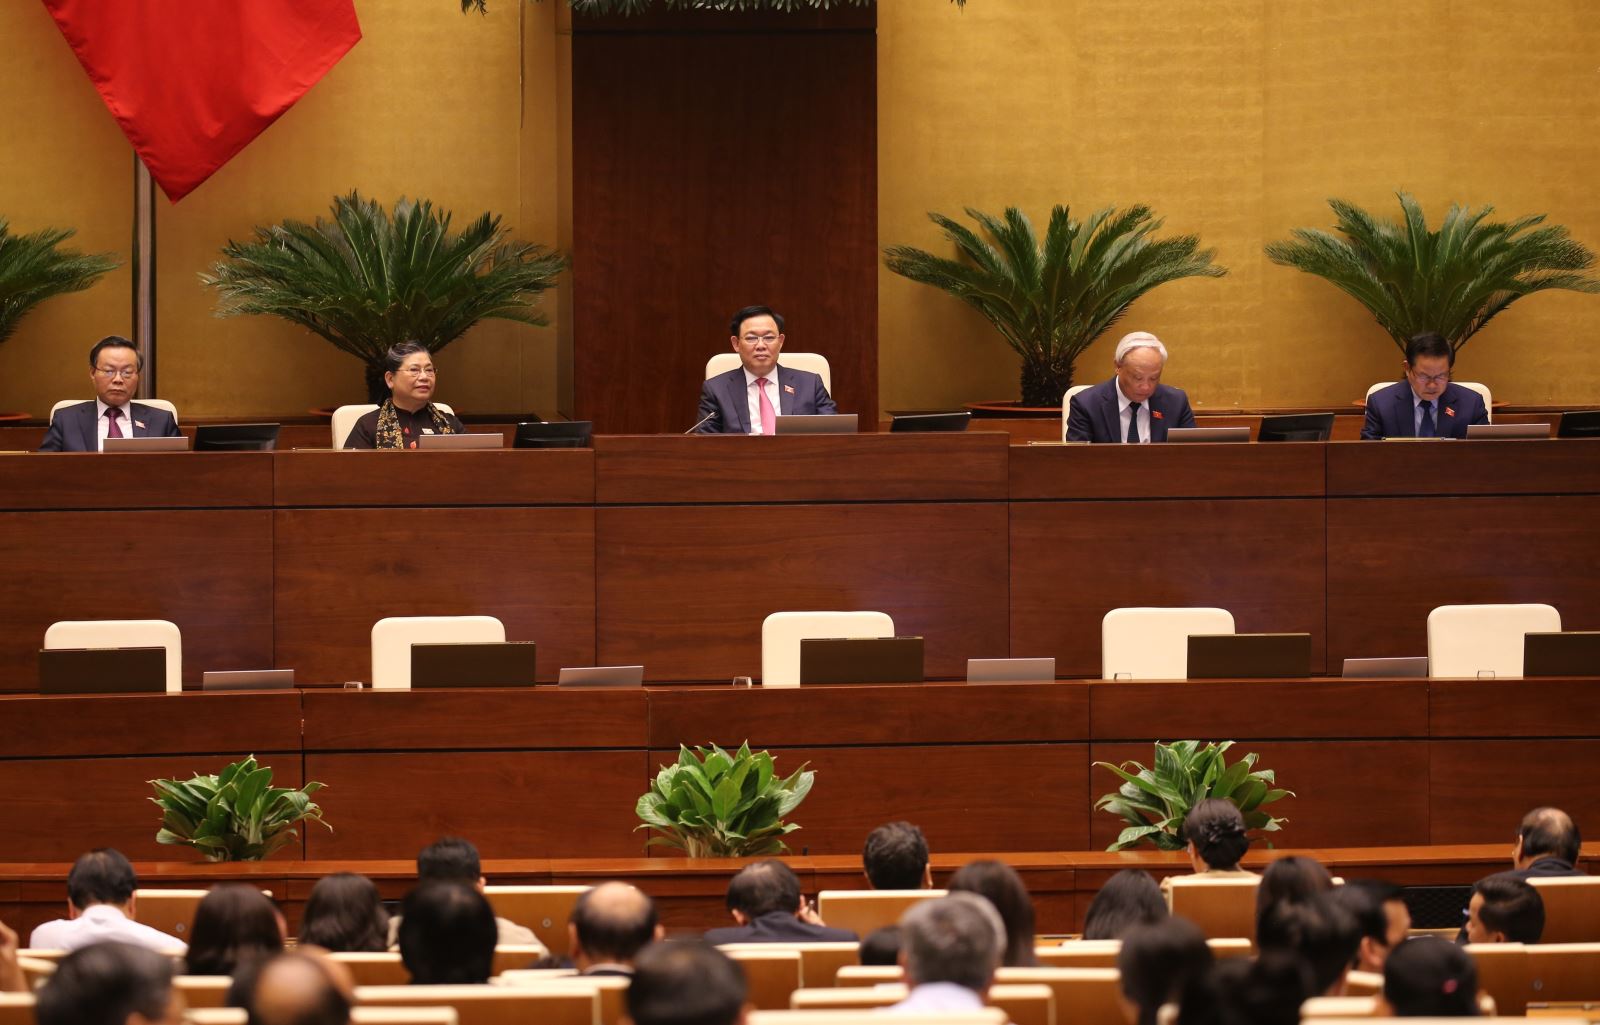 446 đại biểu tán thành thông qua Nghị quyết về việc miễn nhiệm Thủ tướng Chính phủ